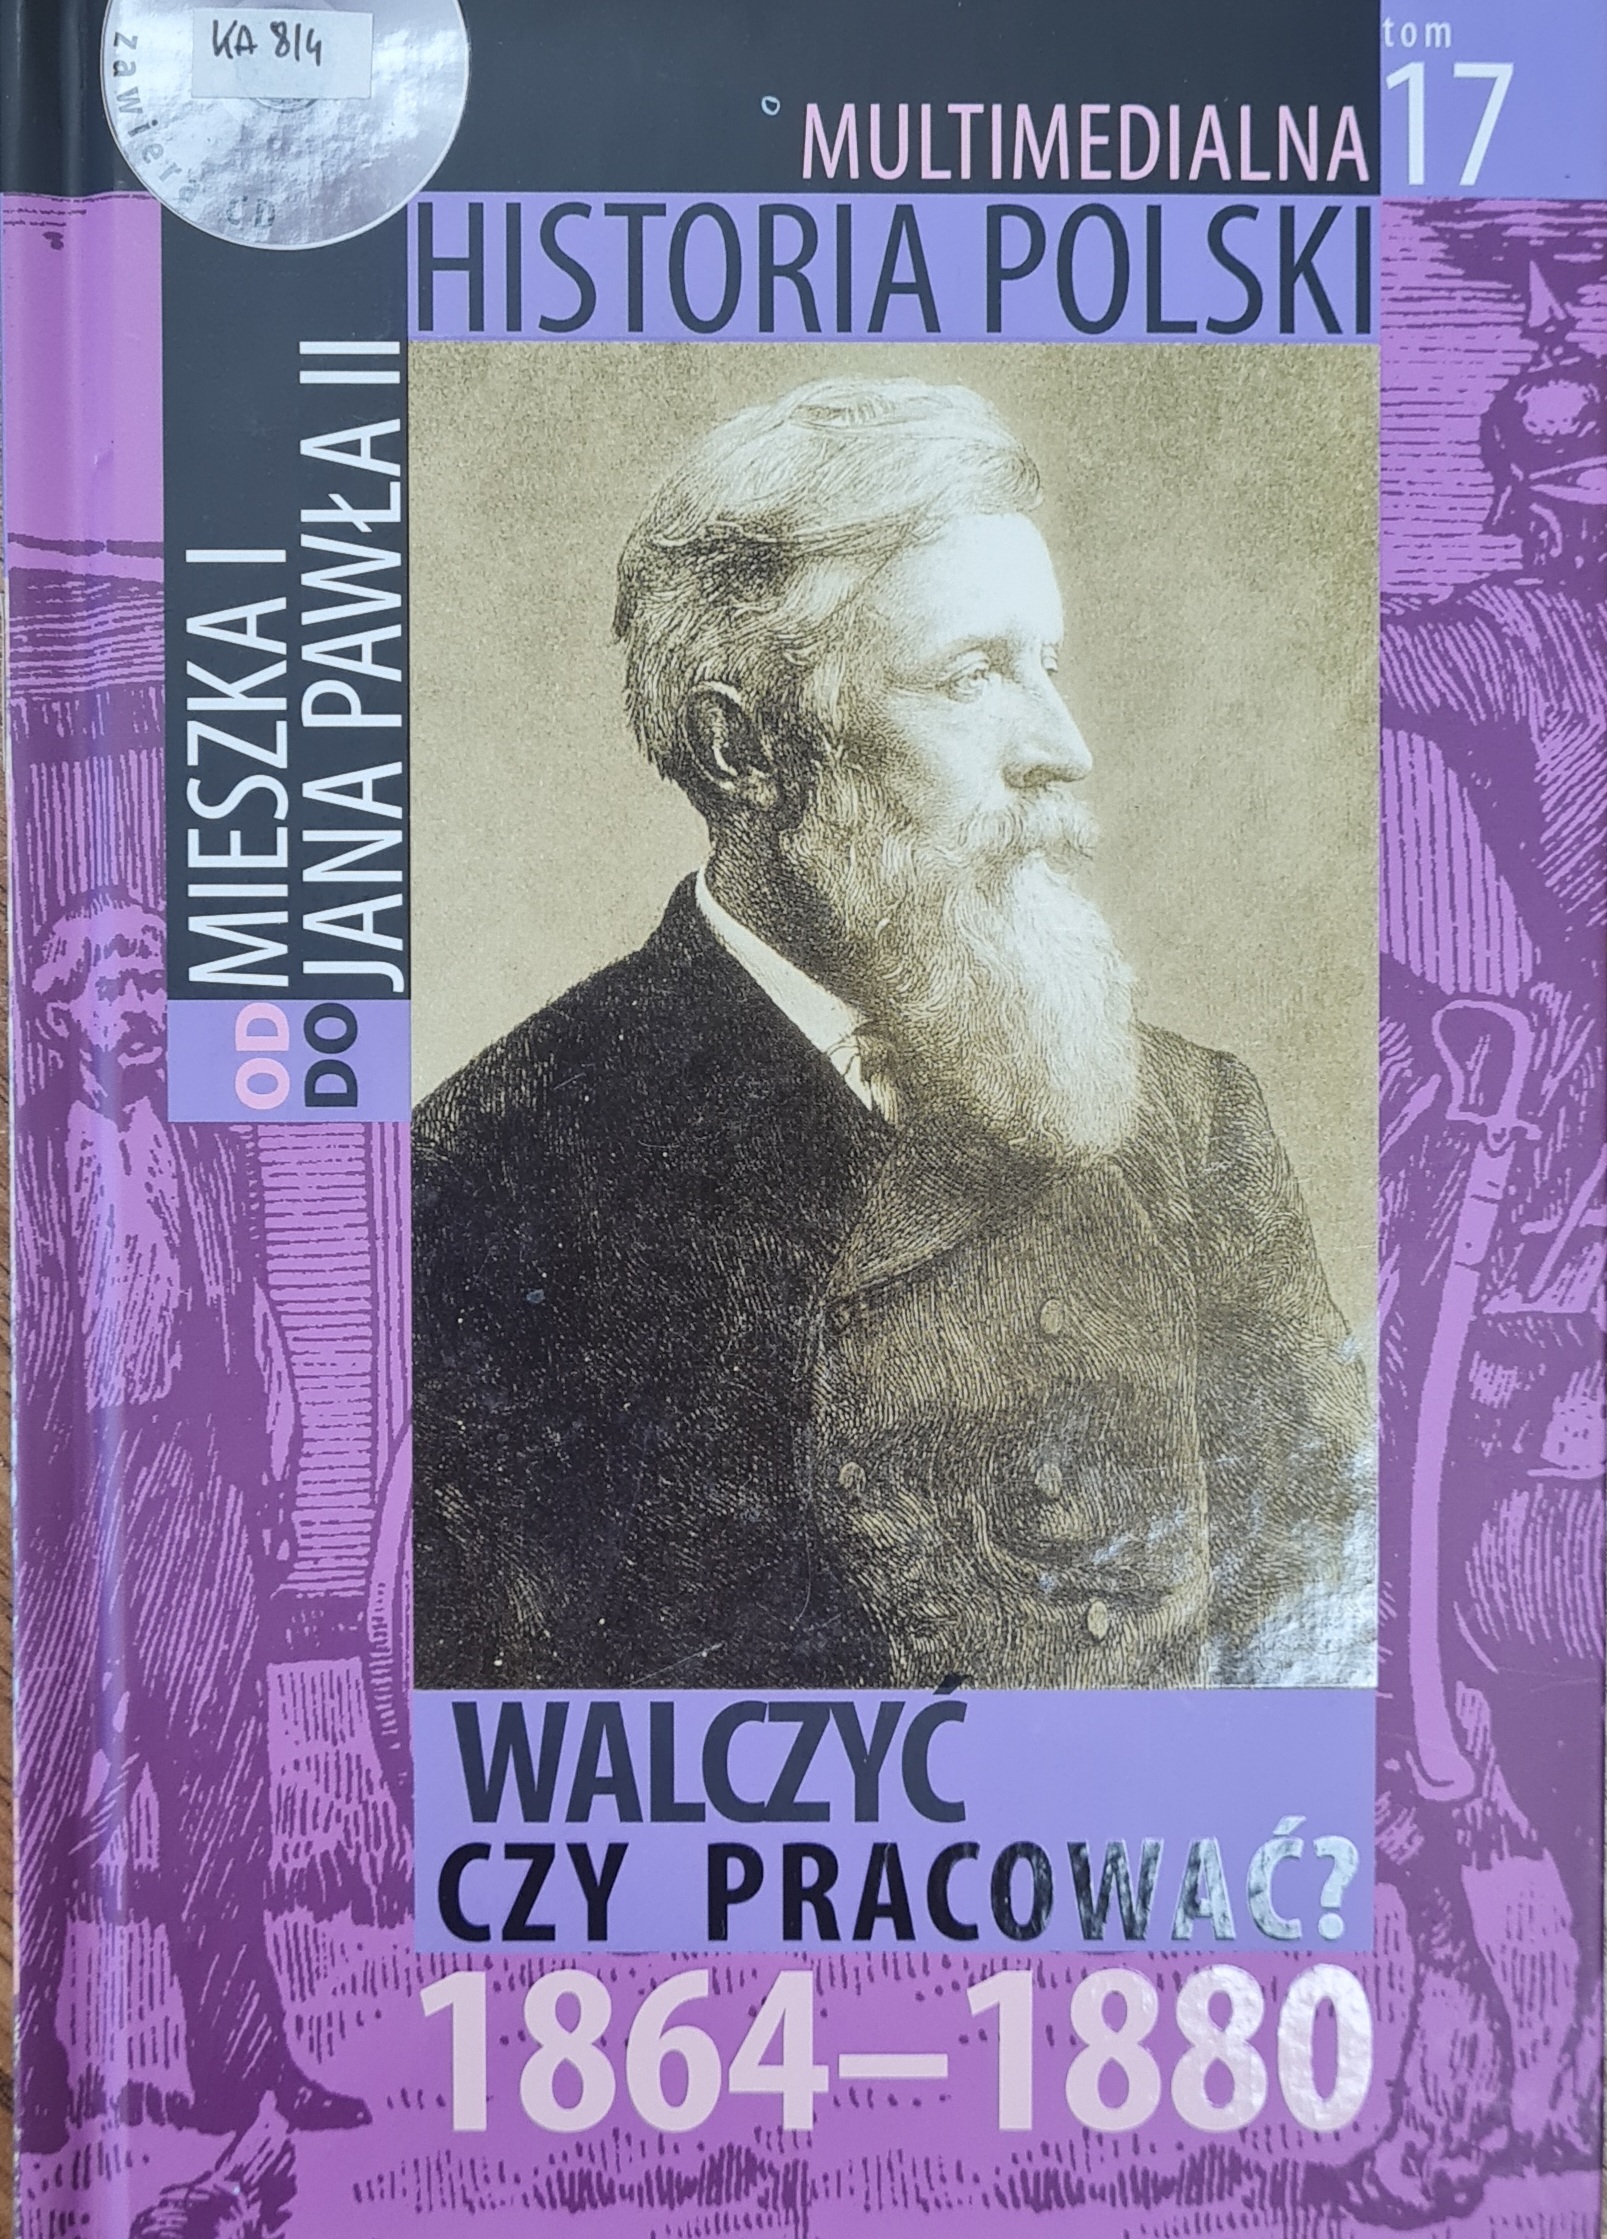 MULTIMEDIALNA HISTORIA POLSKI - OD MIESZKA I DO JANA PAWŁA II - 17. WALCZYĆ CZY PRACOWAĆ? 1864-1880